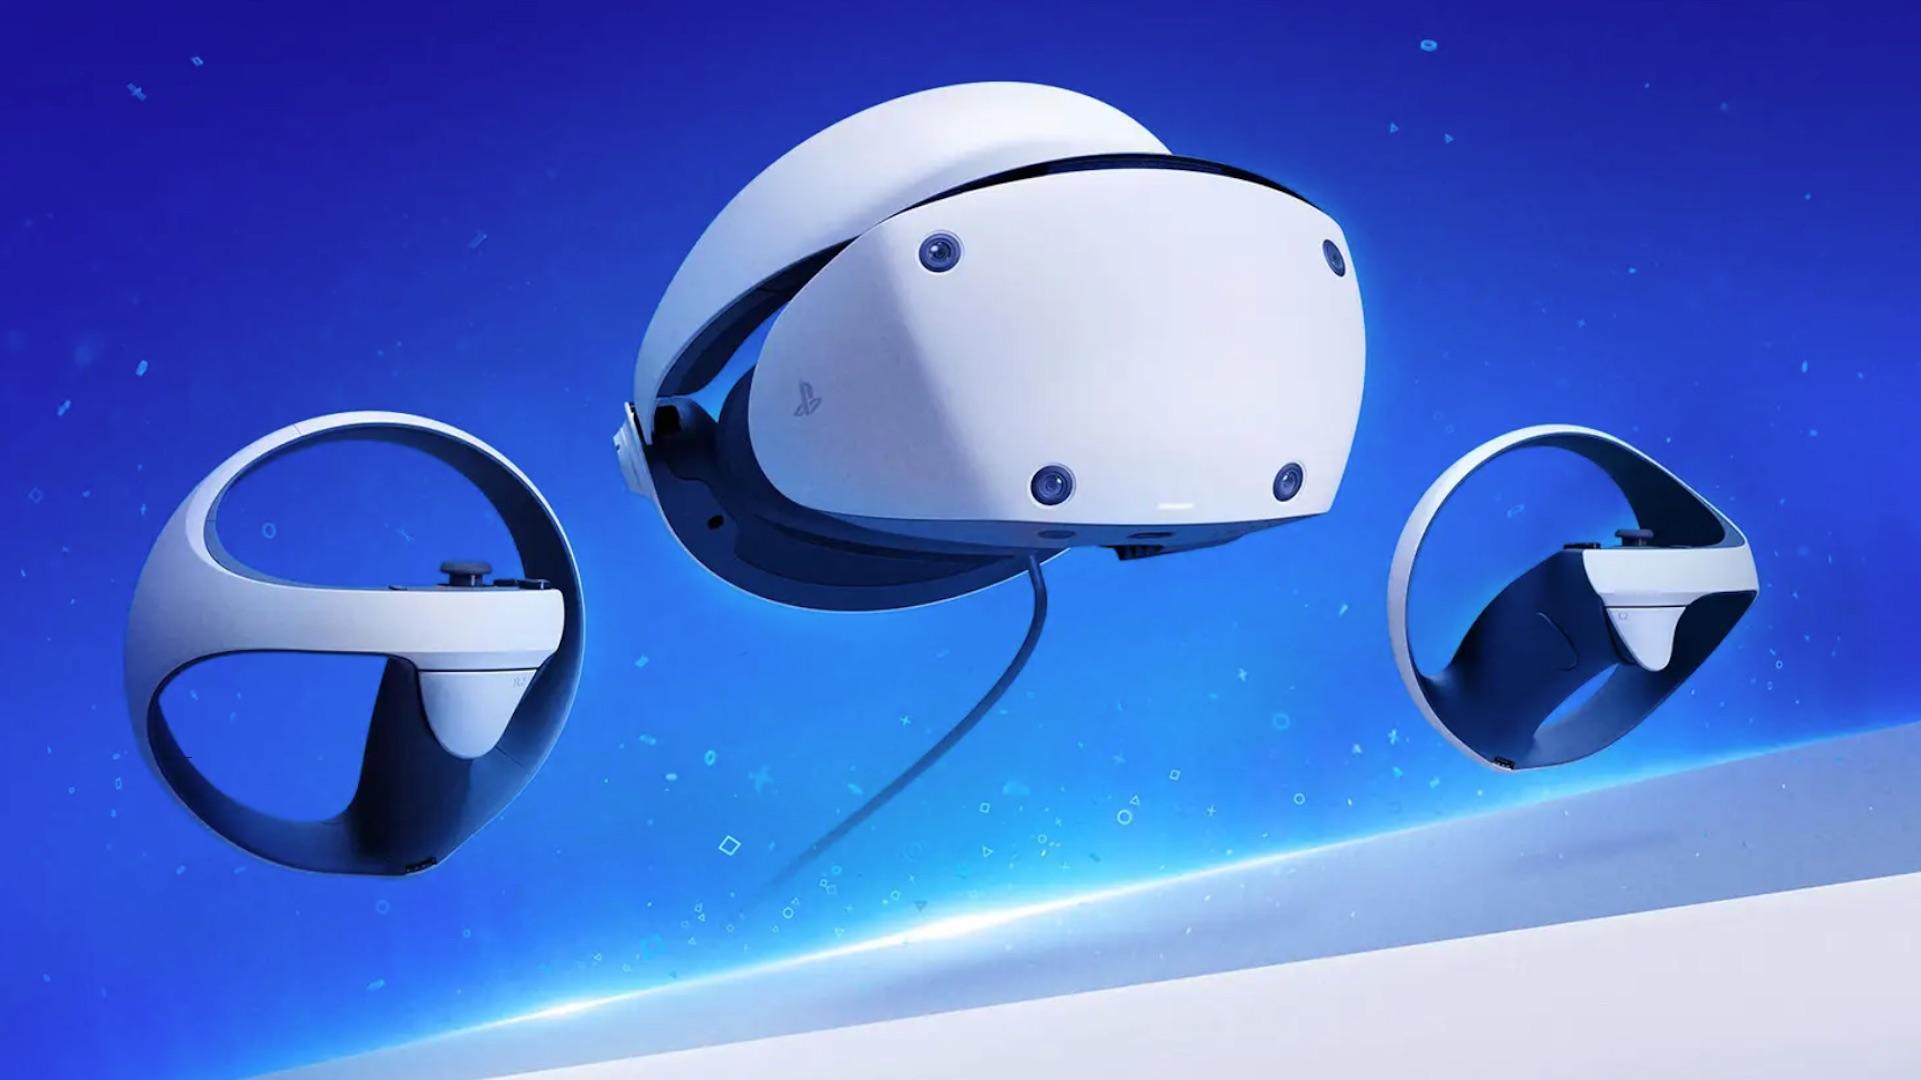 PS VR2, manette Sense : date de sortie, prix, caractéristiques tout ce  que l'on sait sur le futur casque VR de la PS5 - Numerama